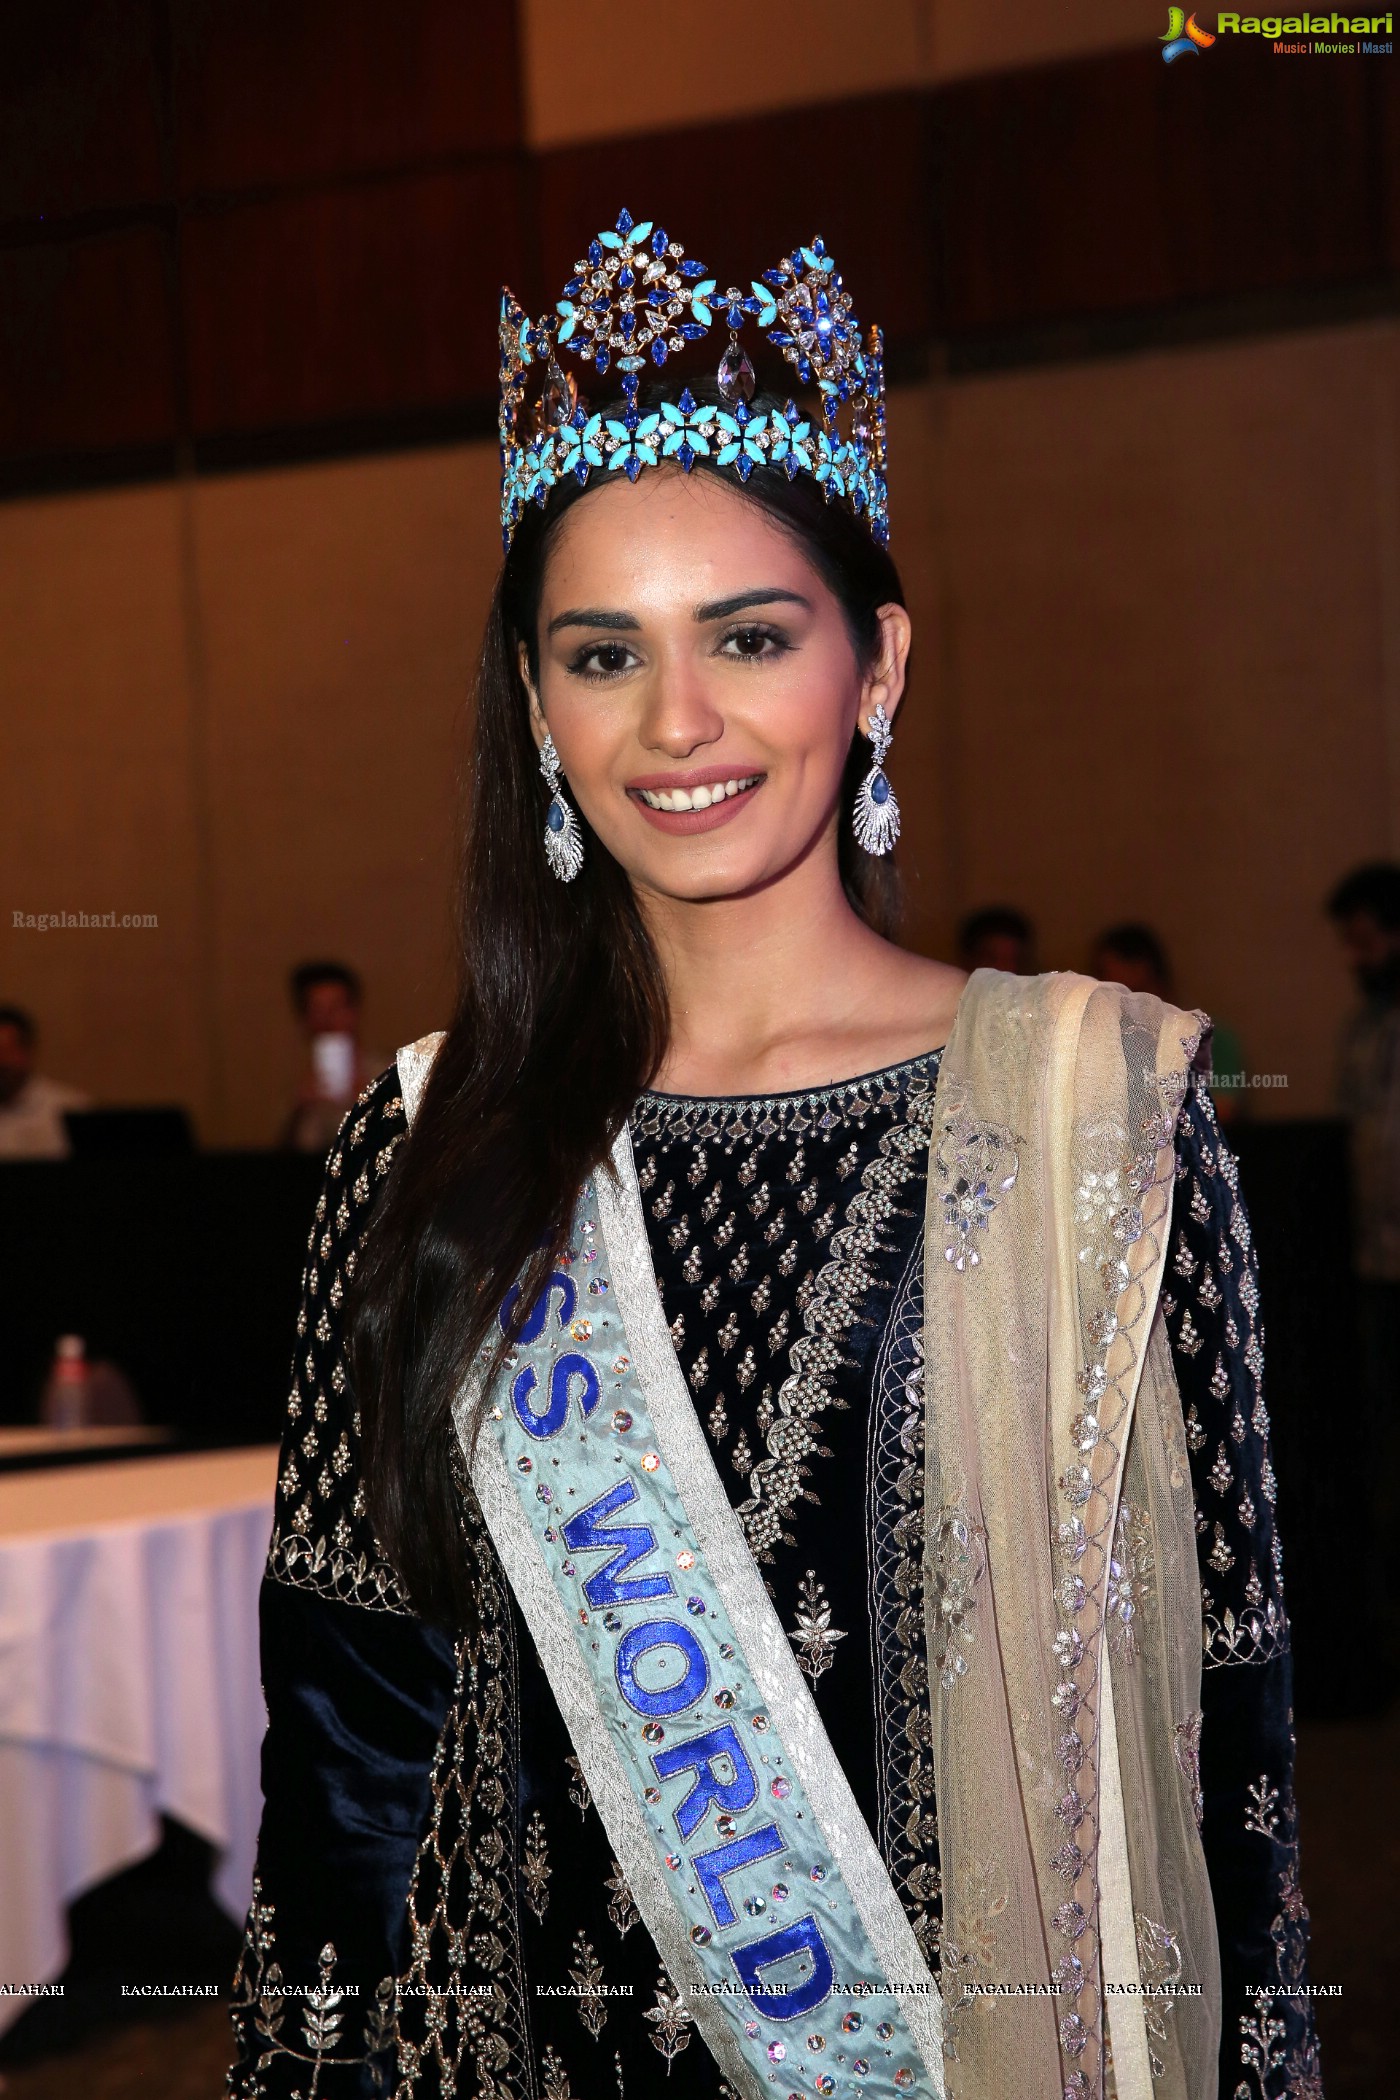 Manushi Singh Chhillar - Miss World 2017 (Posters)